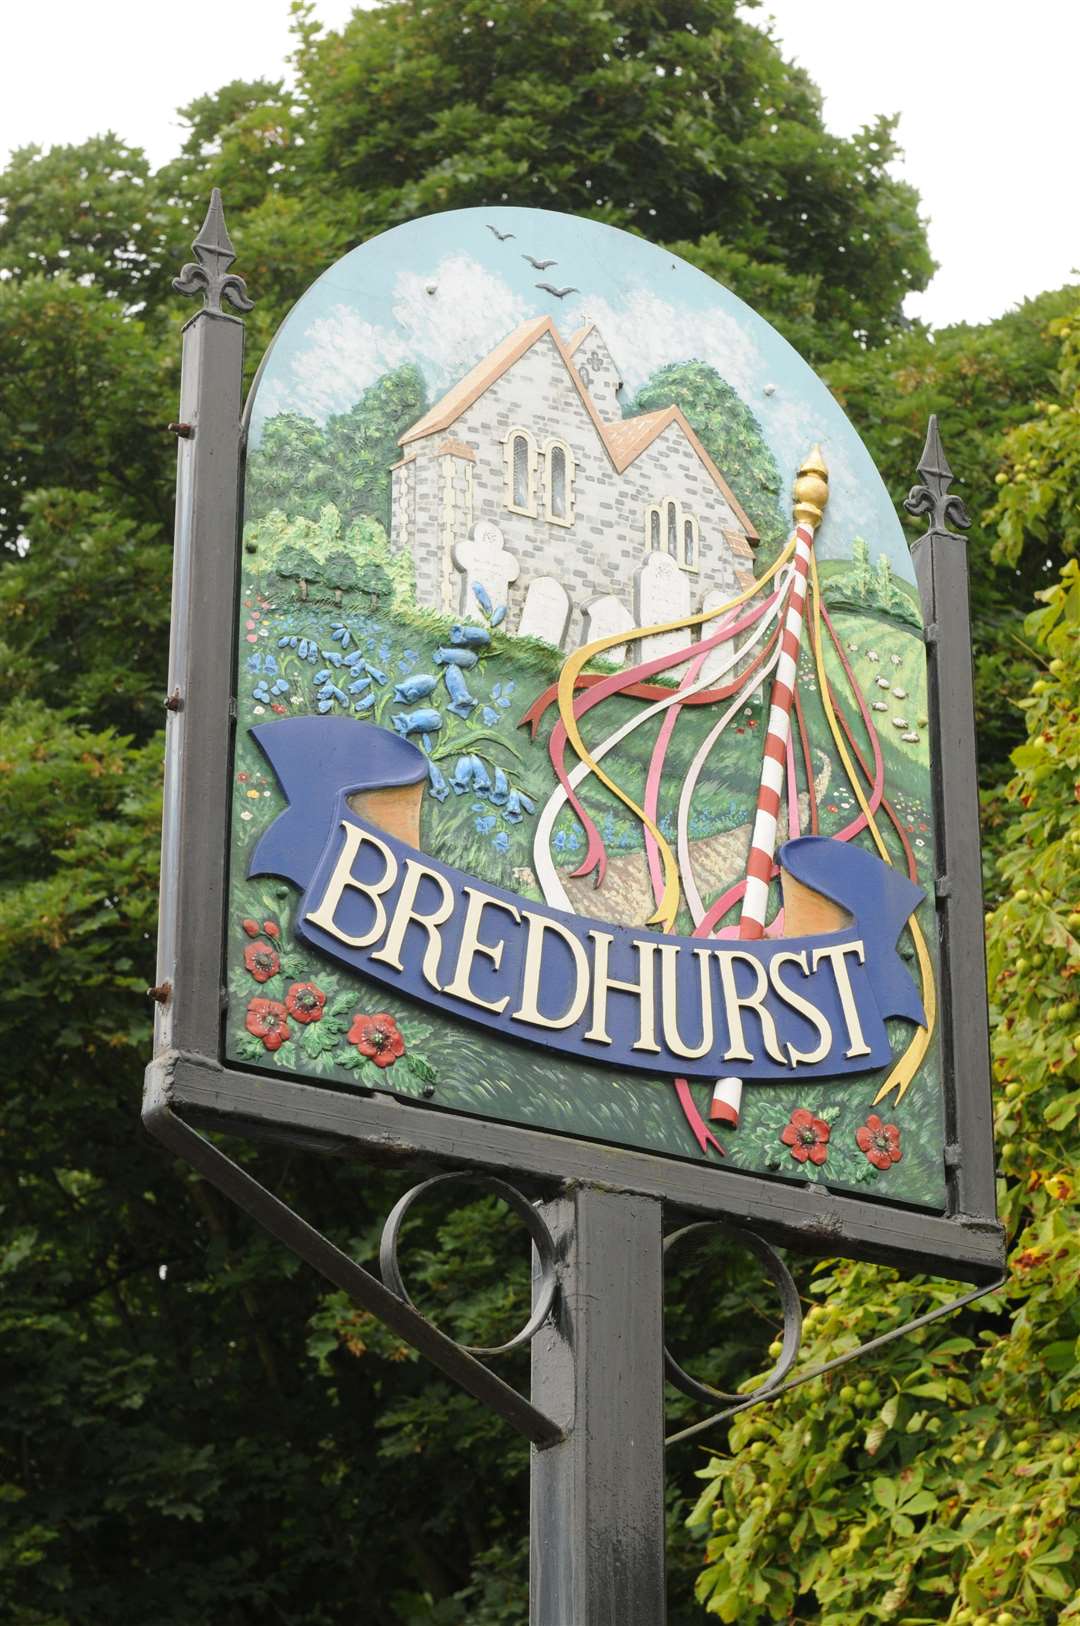 Bredhurst village sign